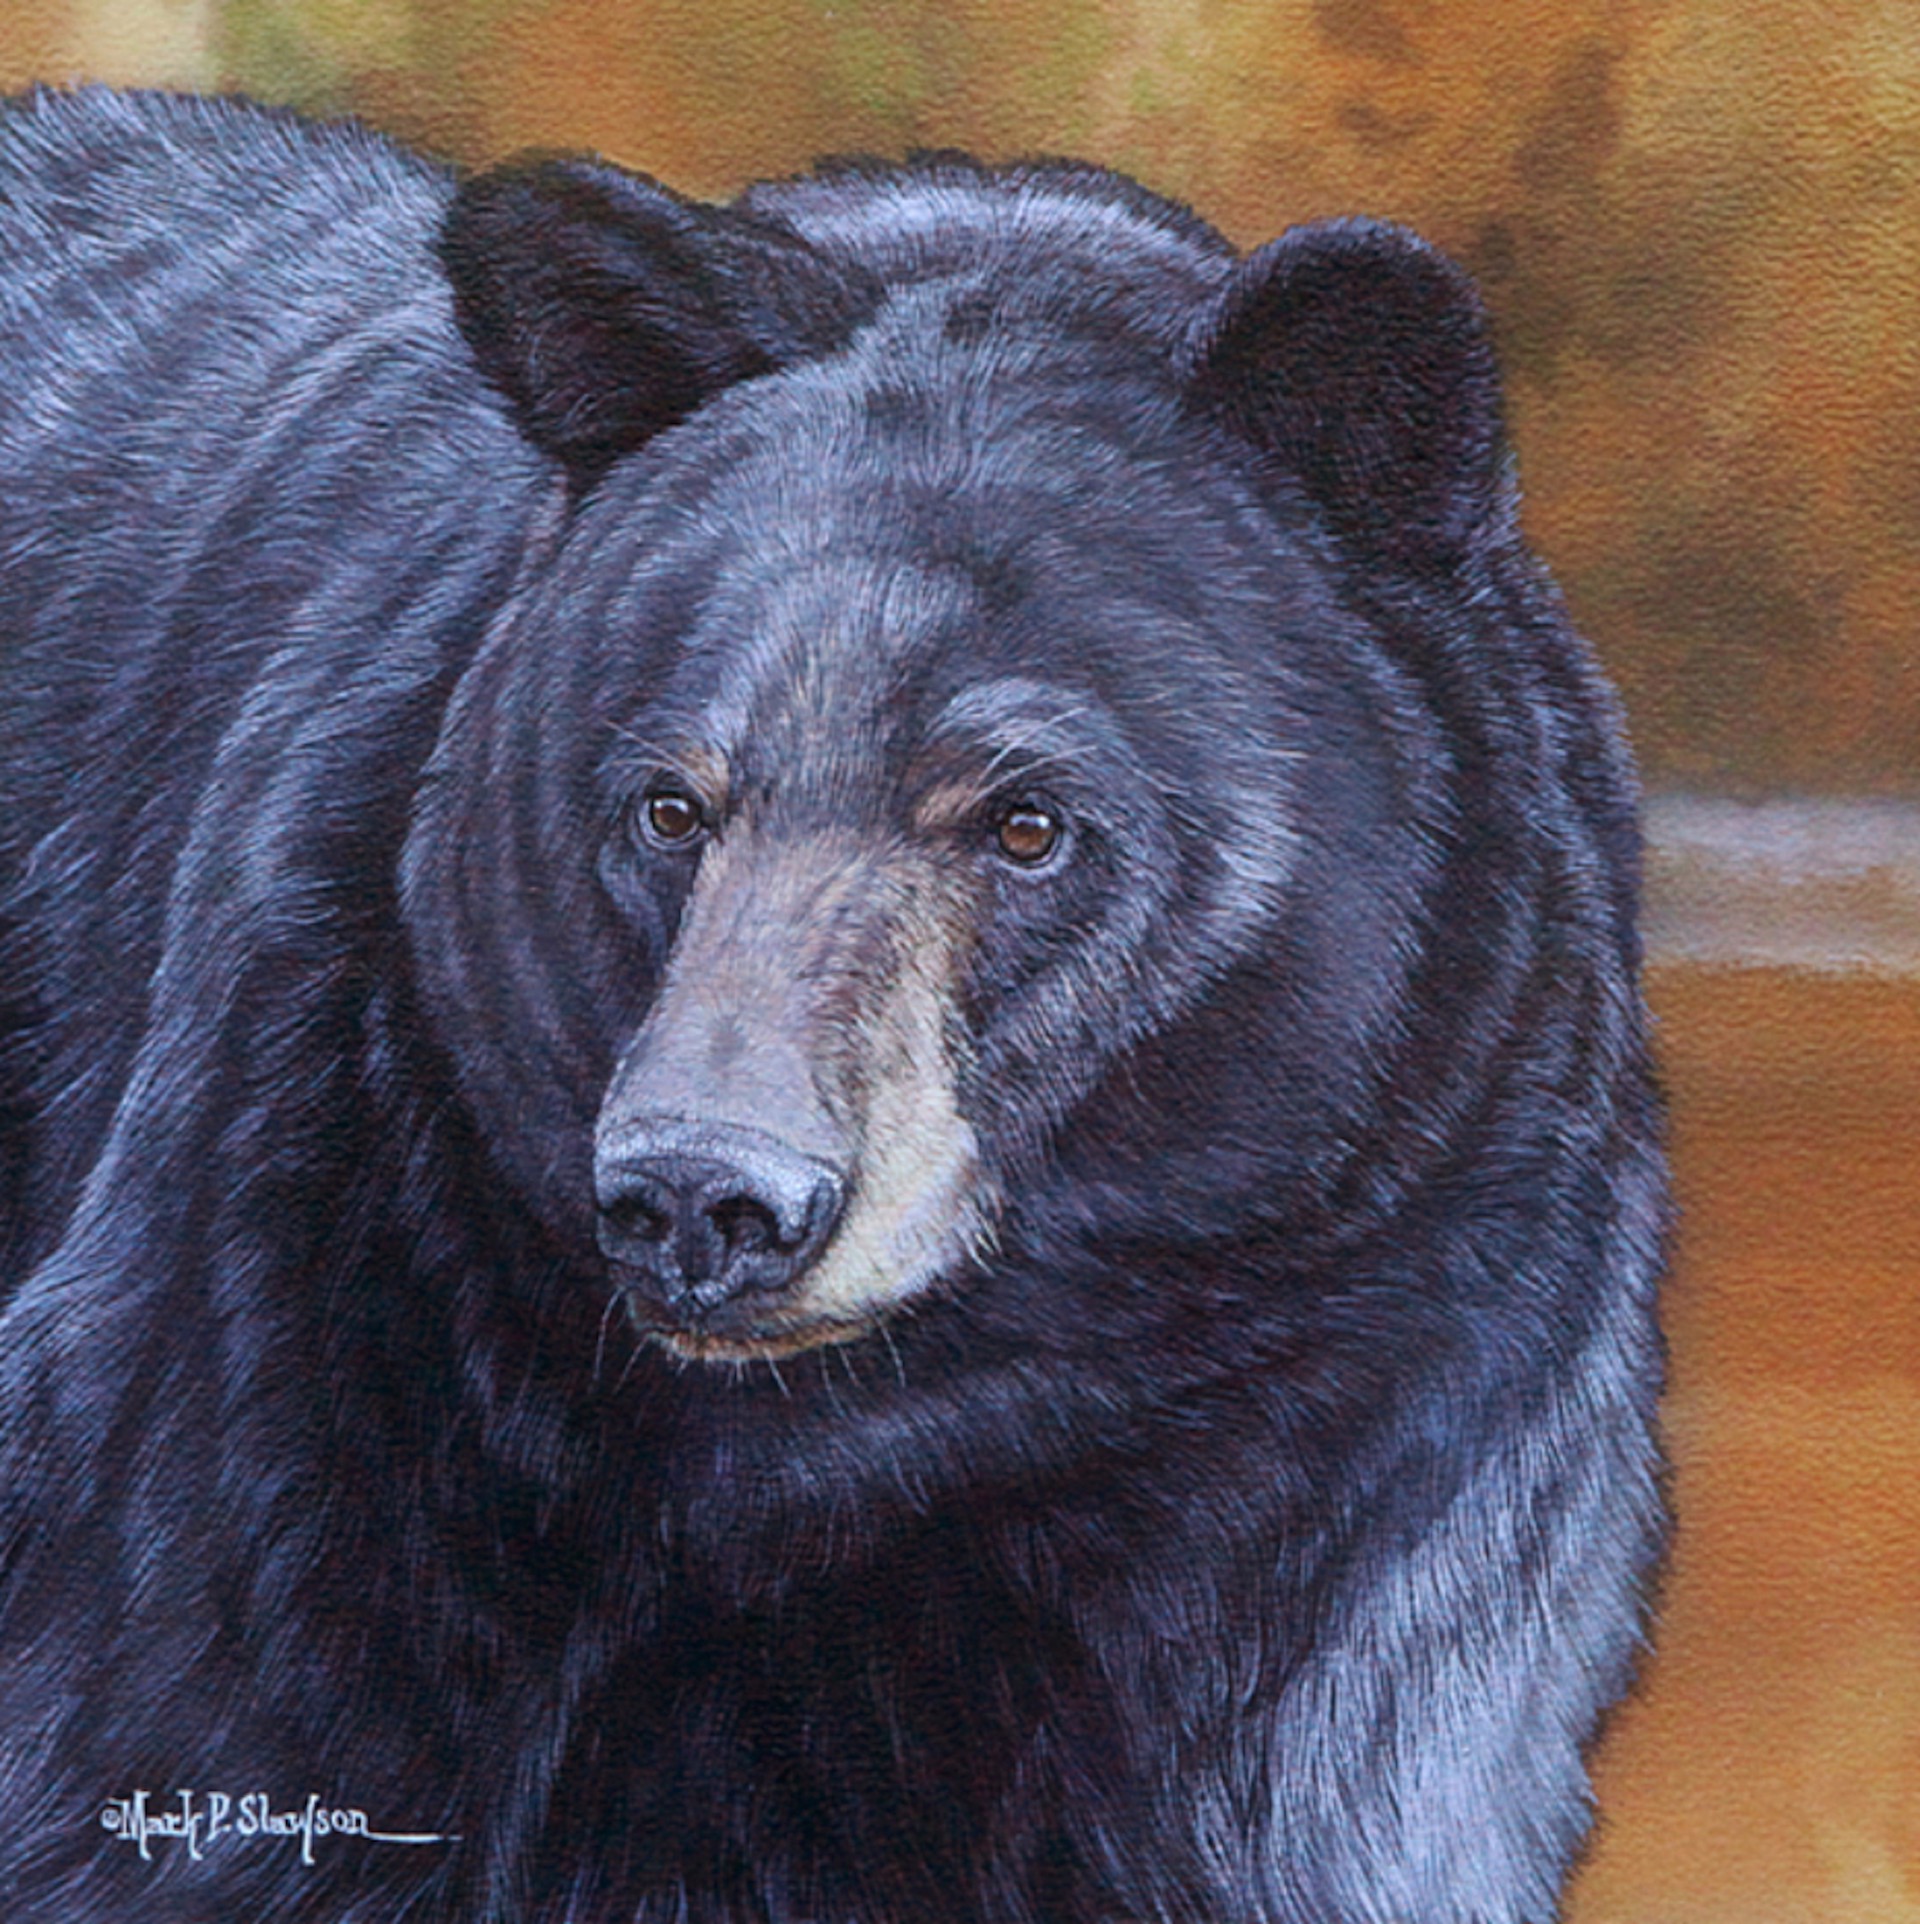 Black Bear Portrait by Mark Slawson